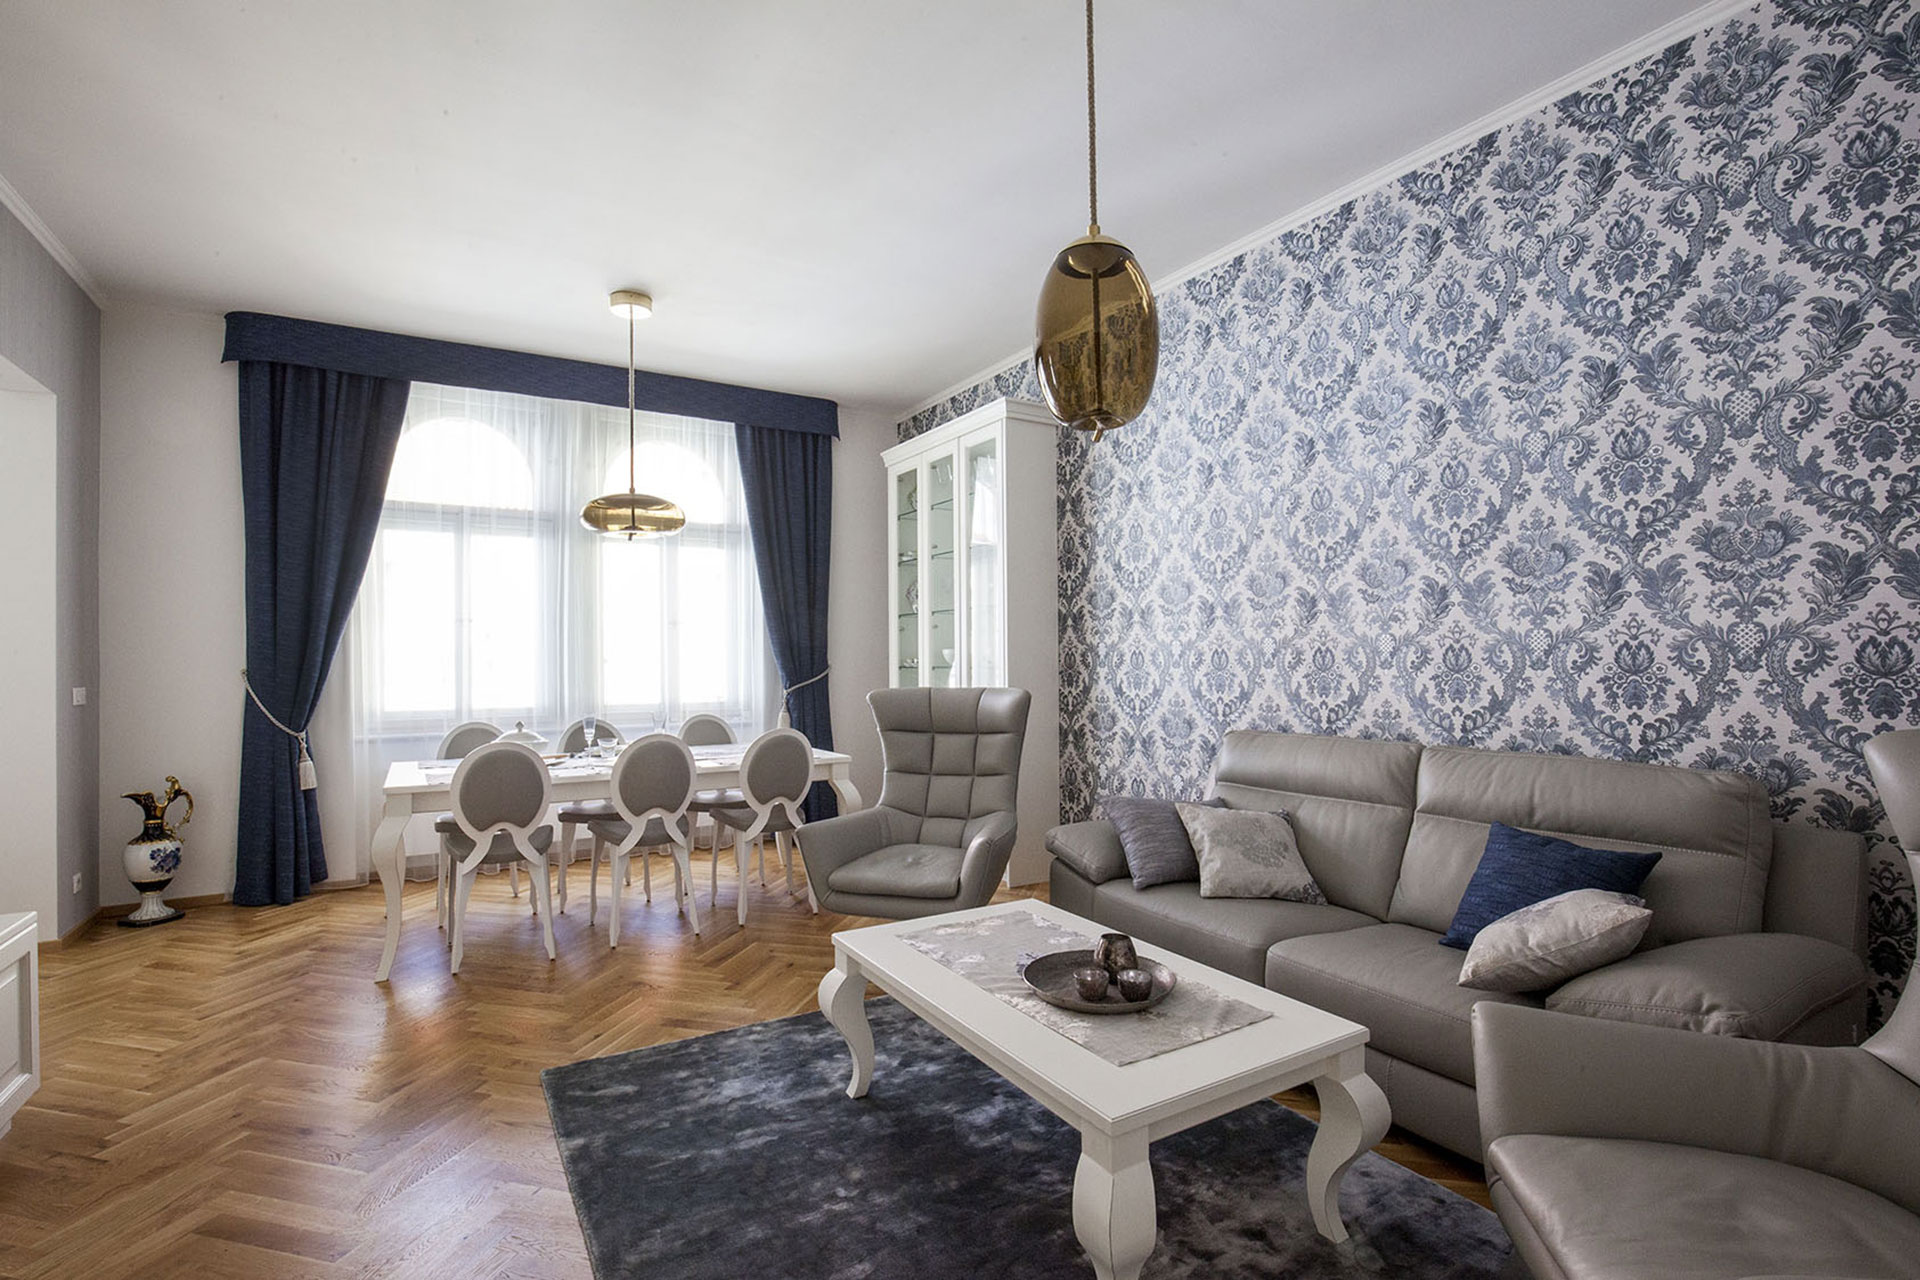 Hanák nábytek Realizace interiéru Rustikální styl Bílý lak patina